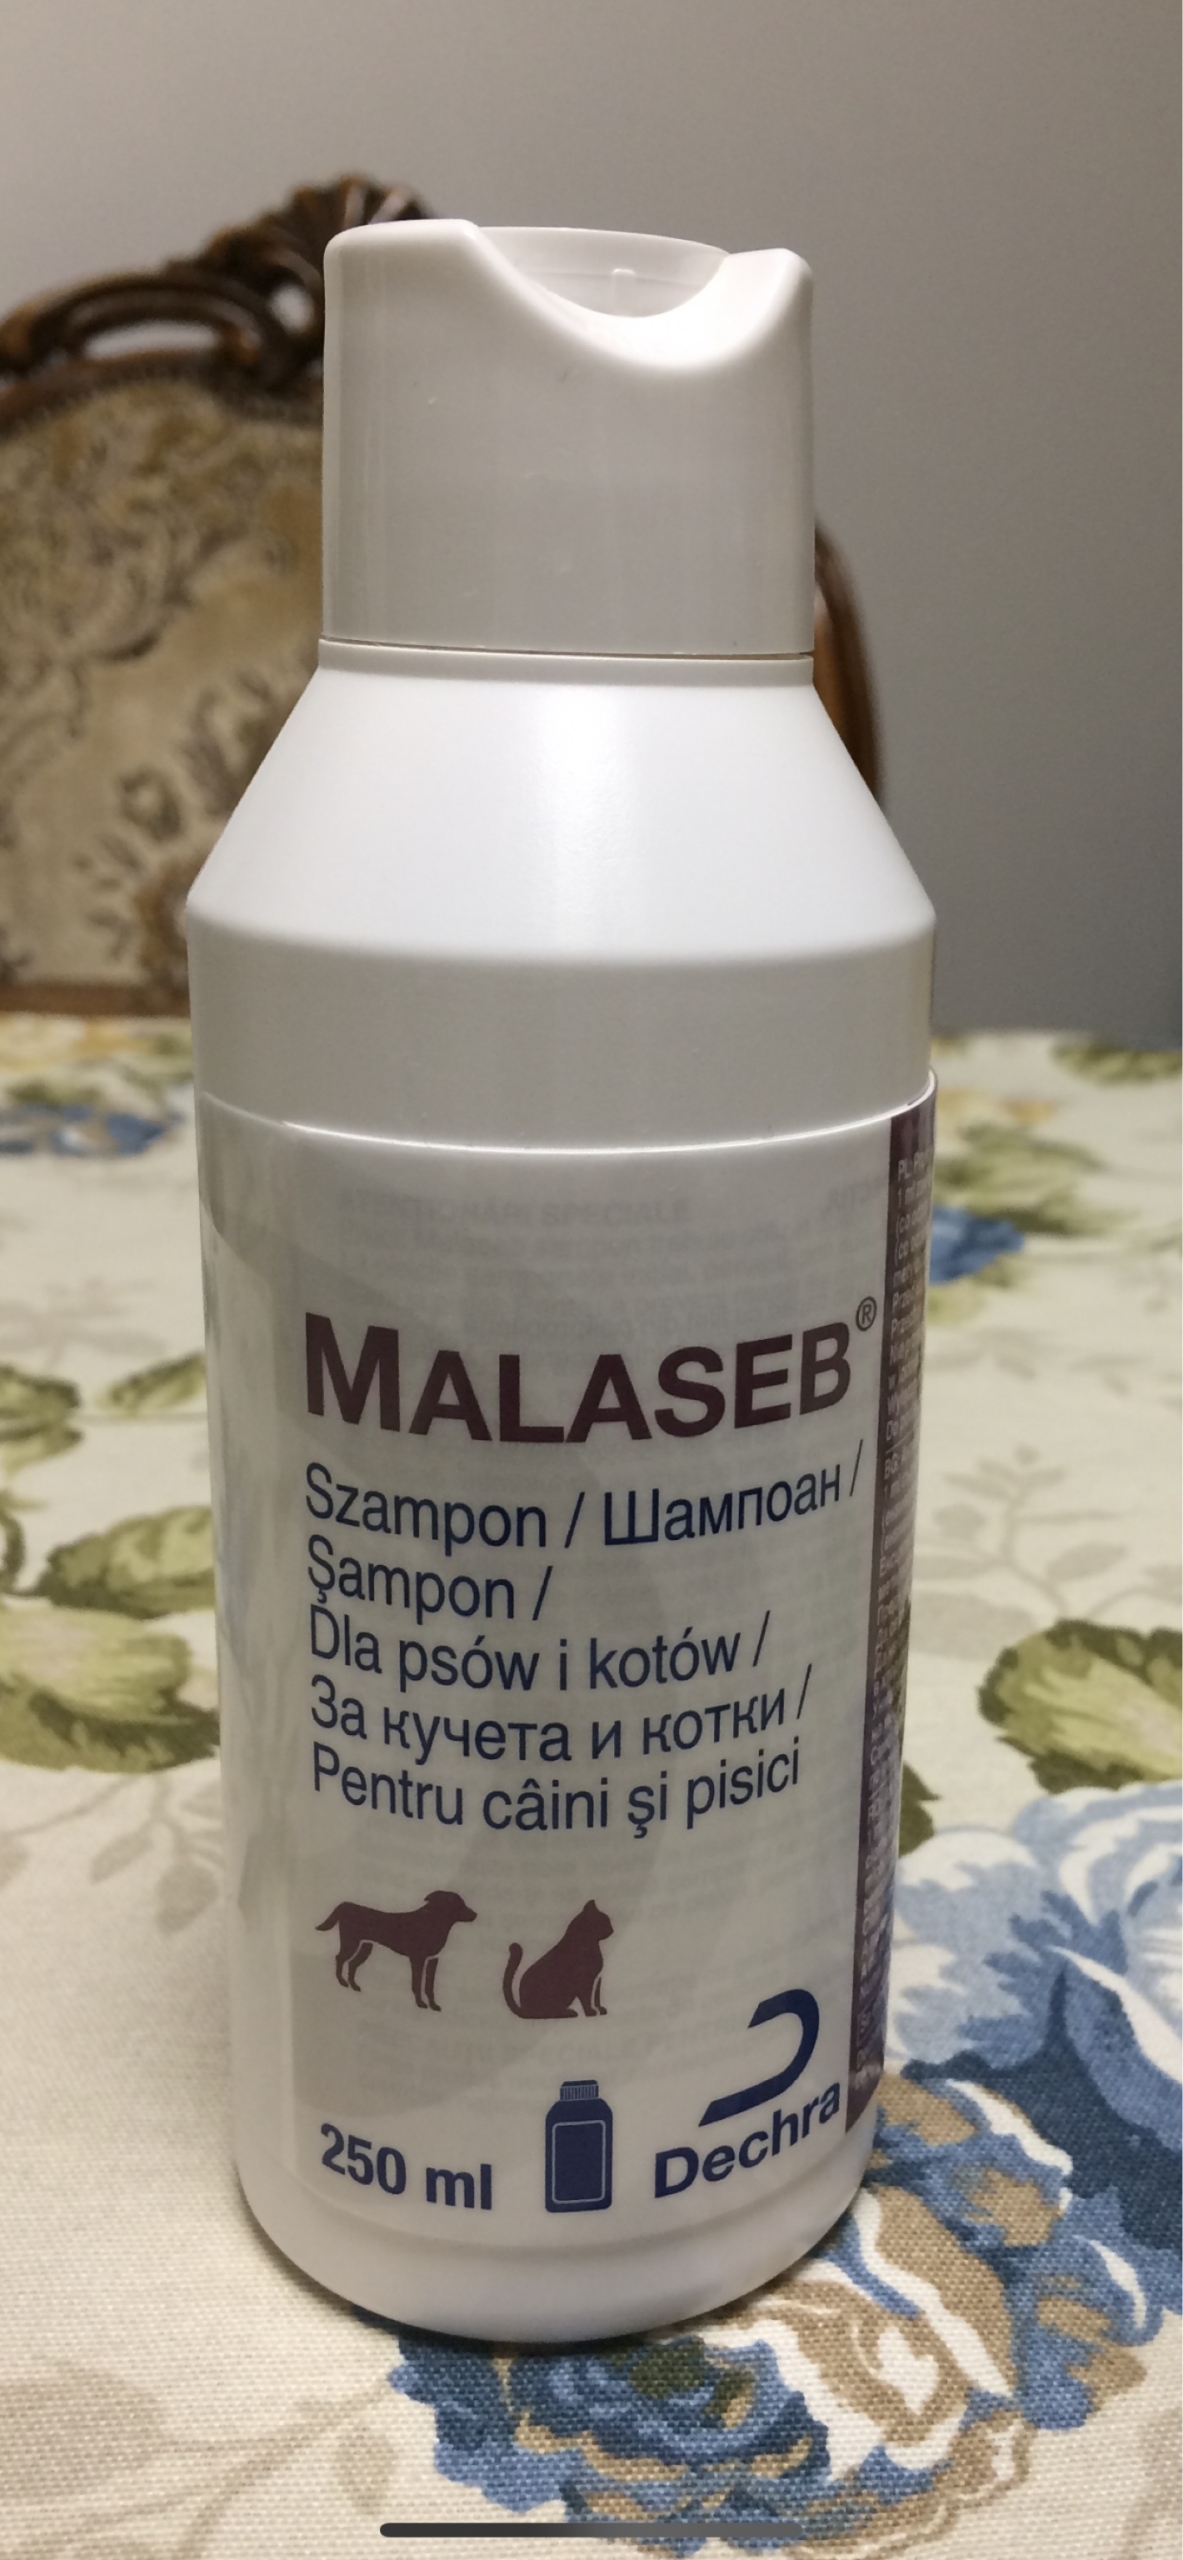 malaseb szampon ceneo